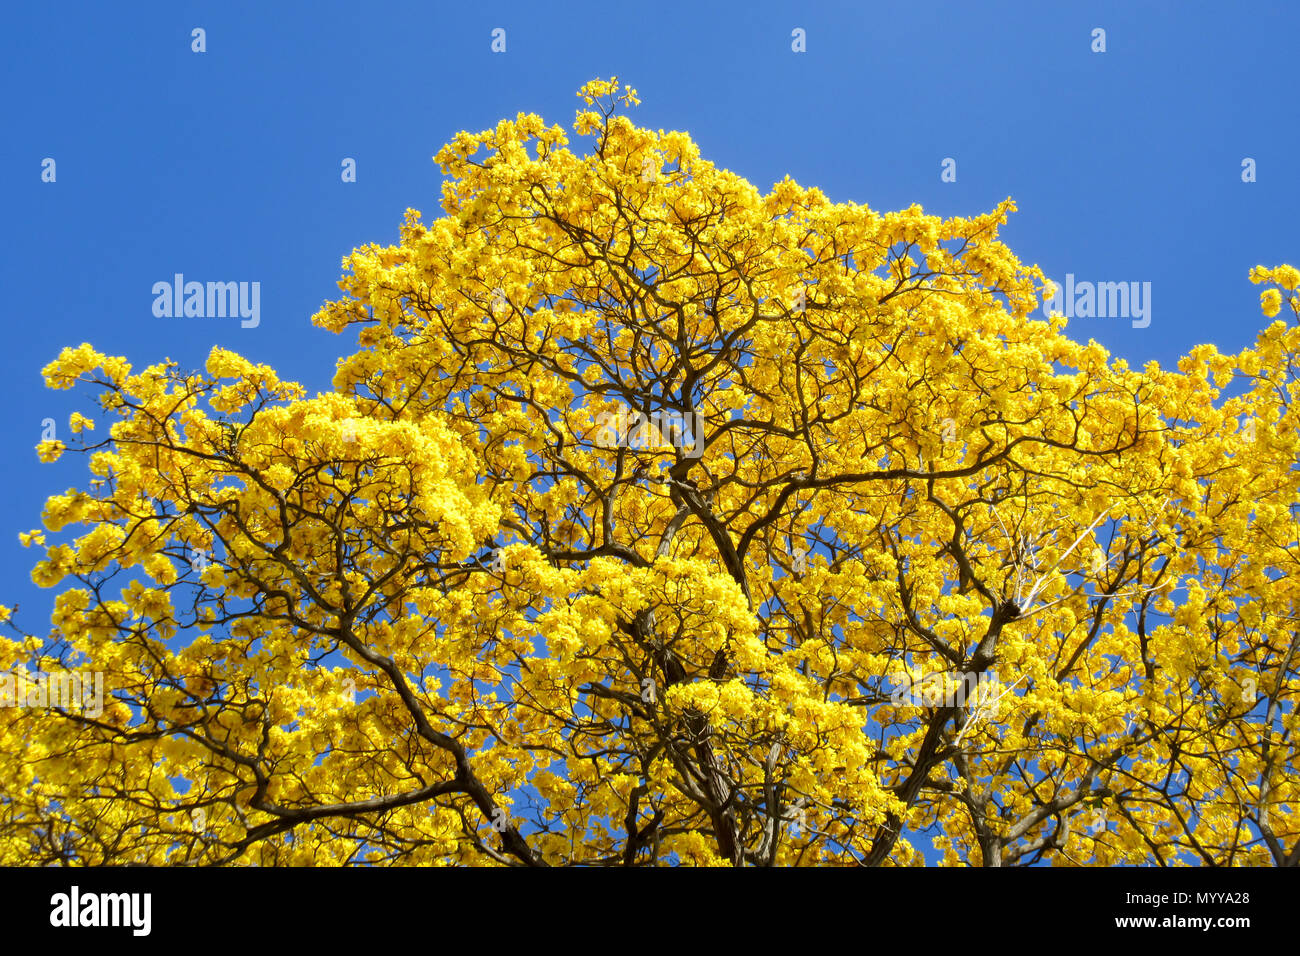 Ein beeindruckender Kontrast der Naturtöne: Ein majestätischer gelber Baum steht hoch vor dem klaren blauen Himmel Stockfoto